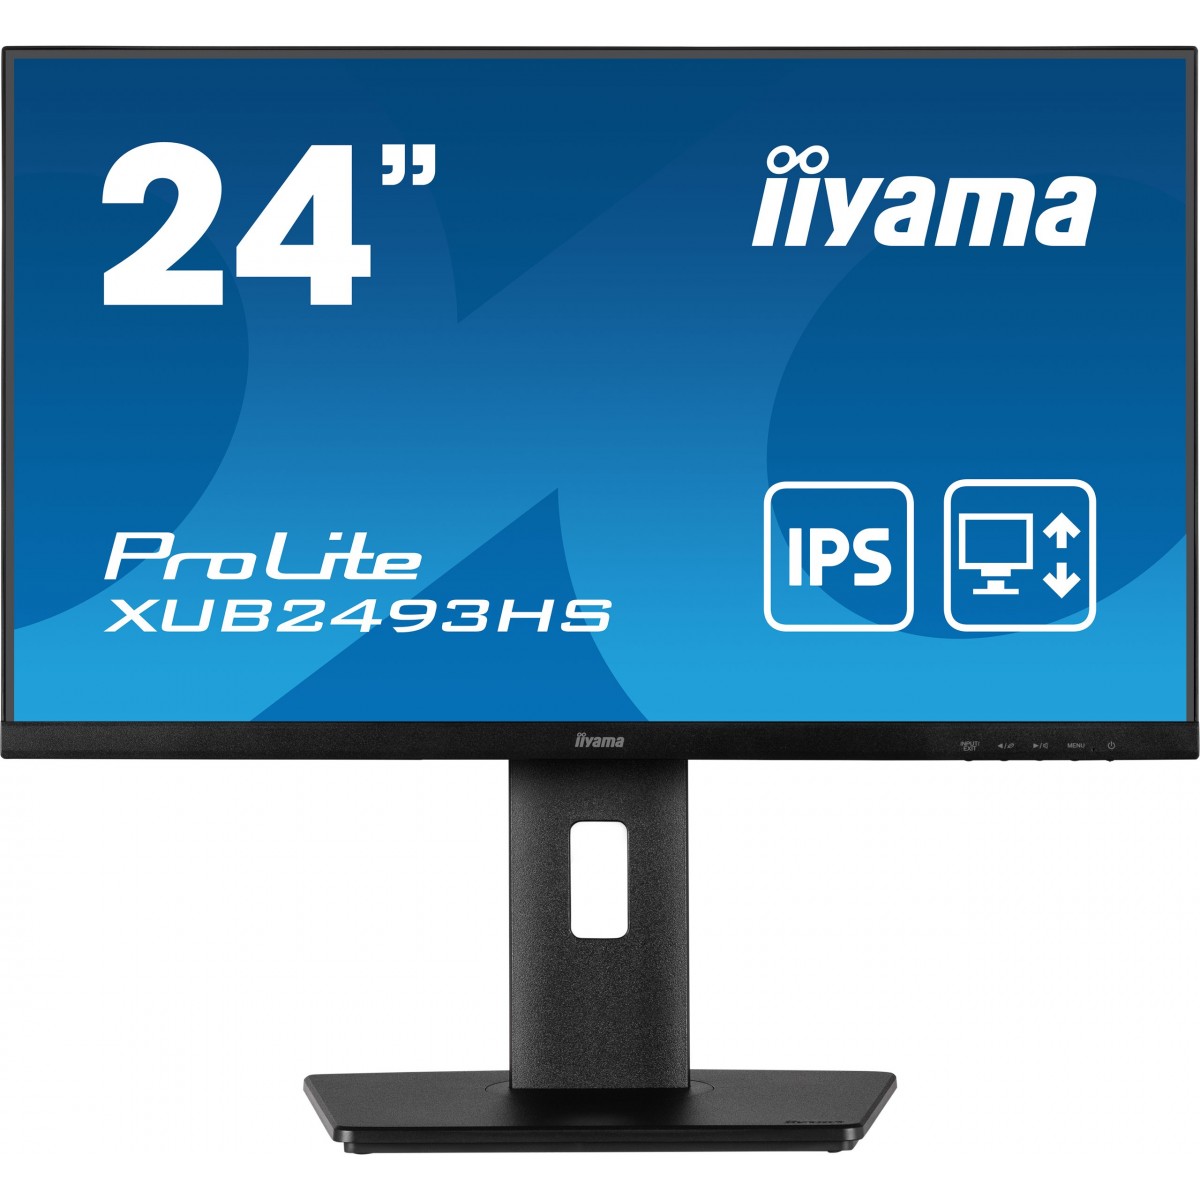 Iiyama 24W LCD Business Full HD IPS - Flat Screen - 24